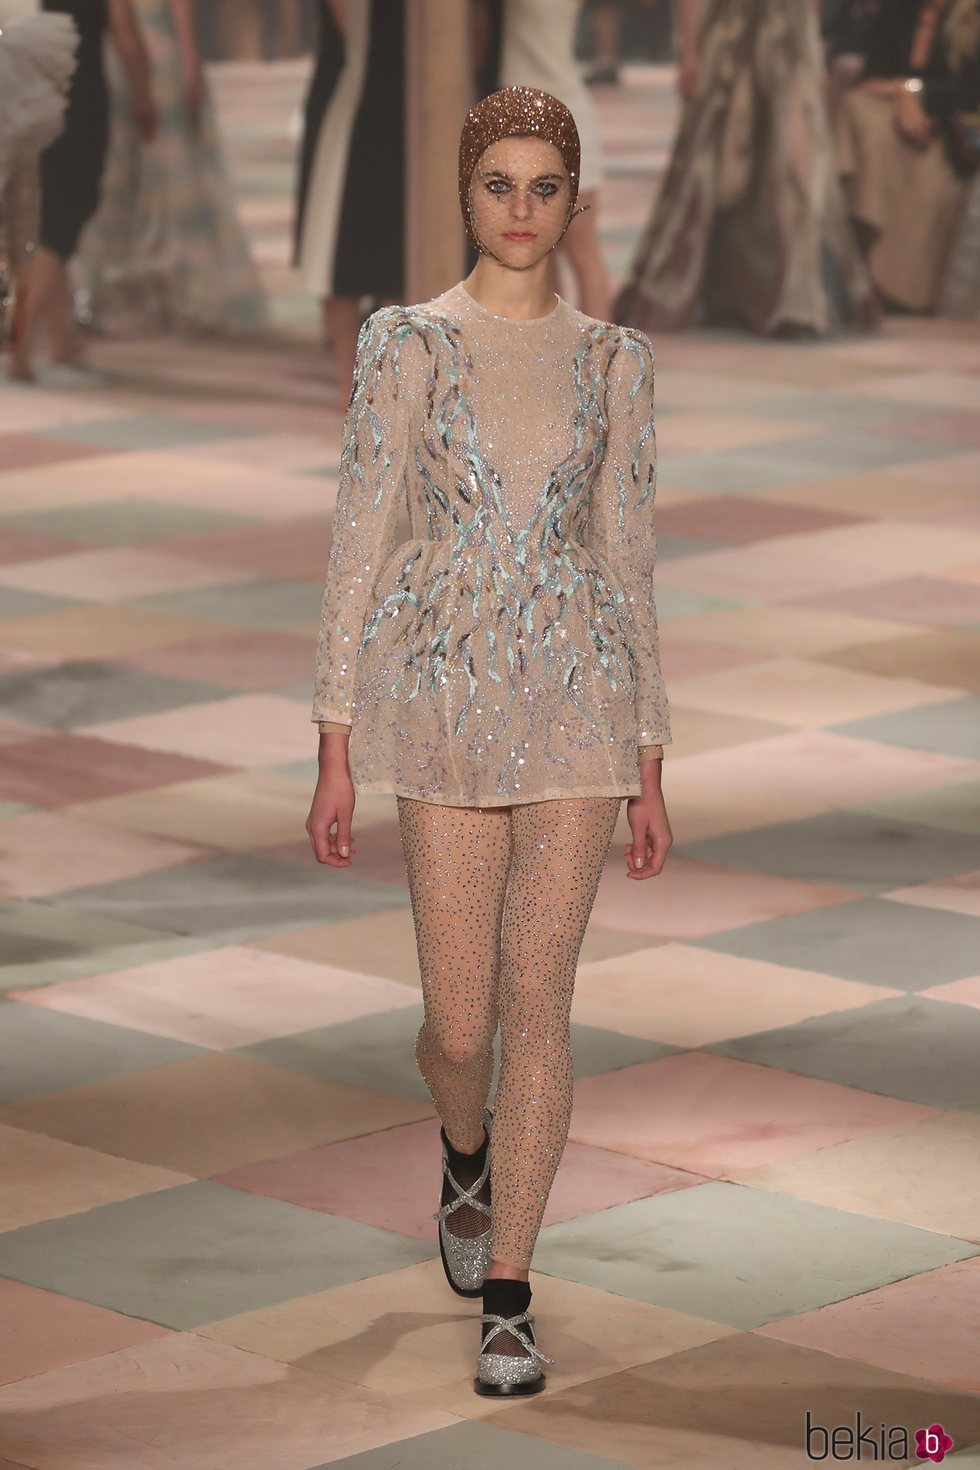 Minivestido beige con brillos de la colección de Alta Costura de Christian Dior para primavera/verano 2019 presentada en París